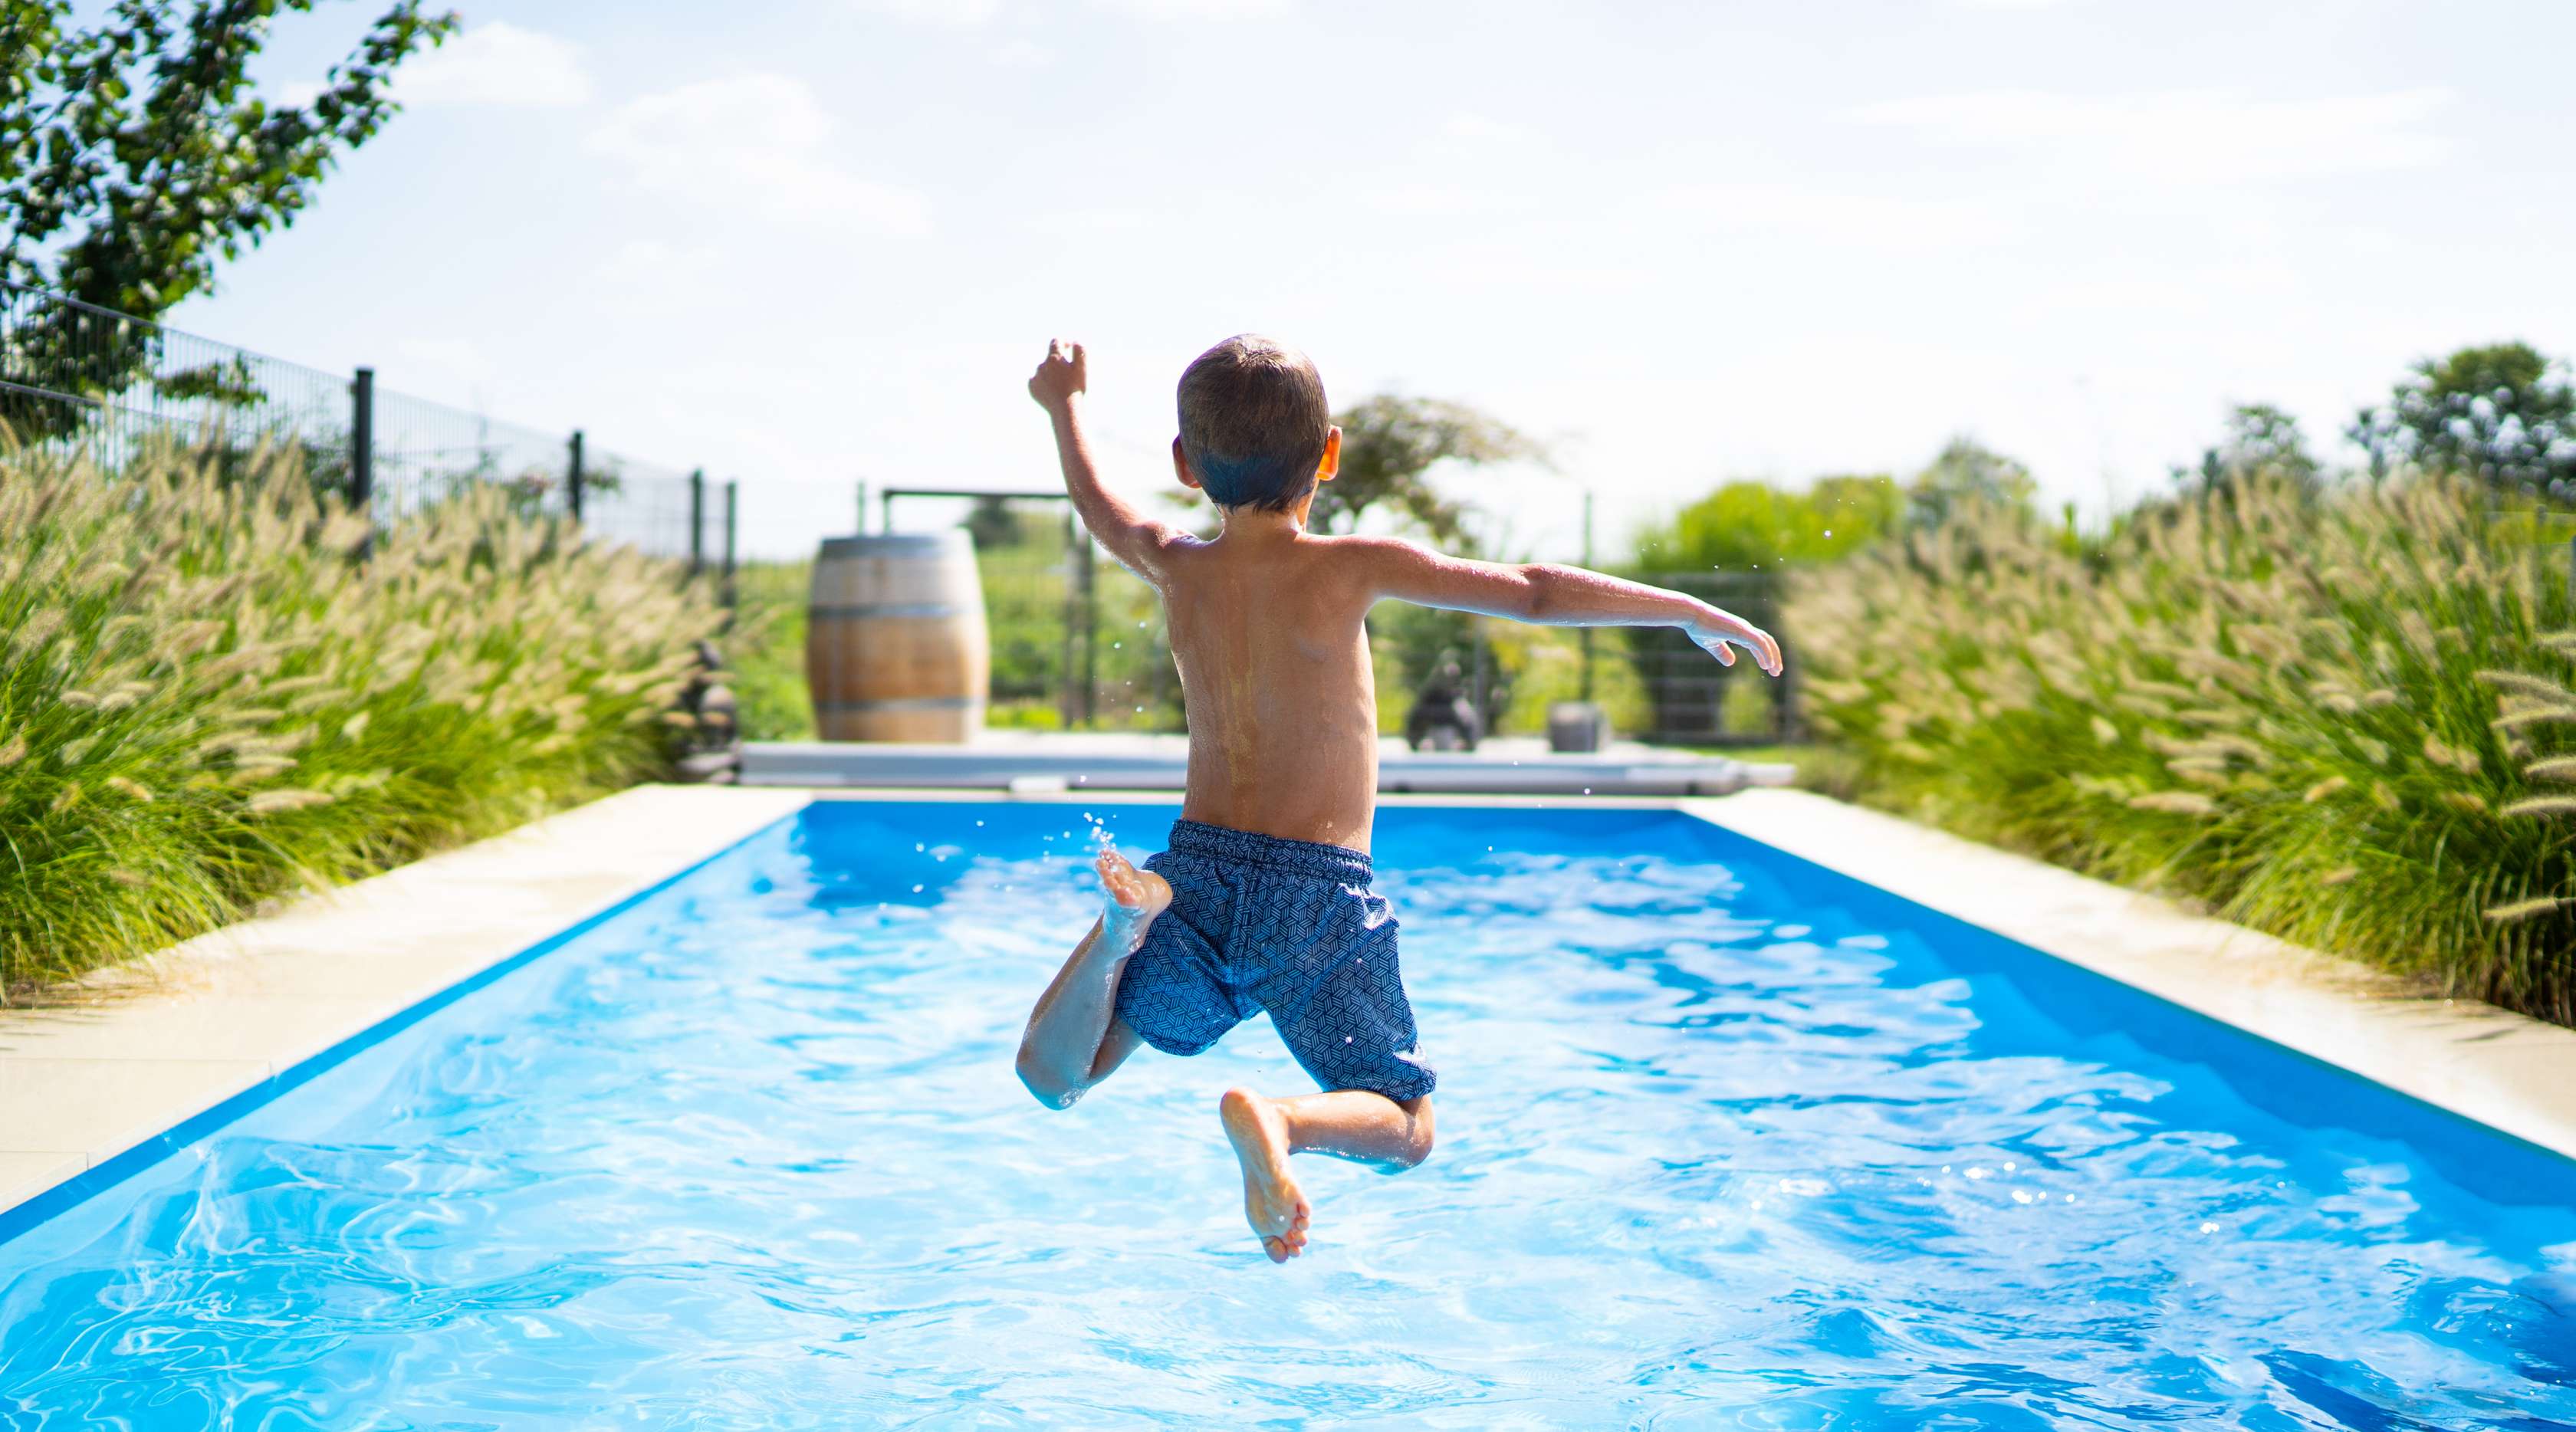 Badeunfall: Junge springt in einen Pool zum Baden